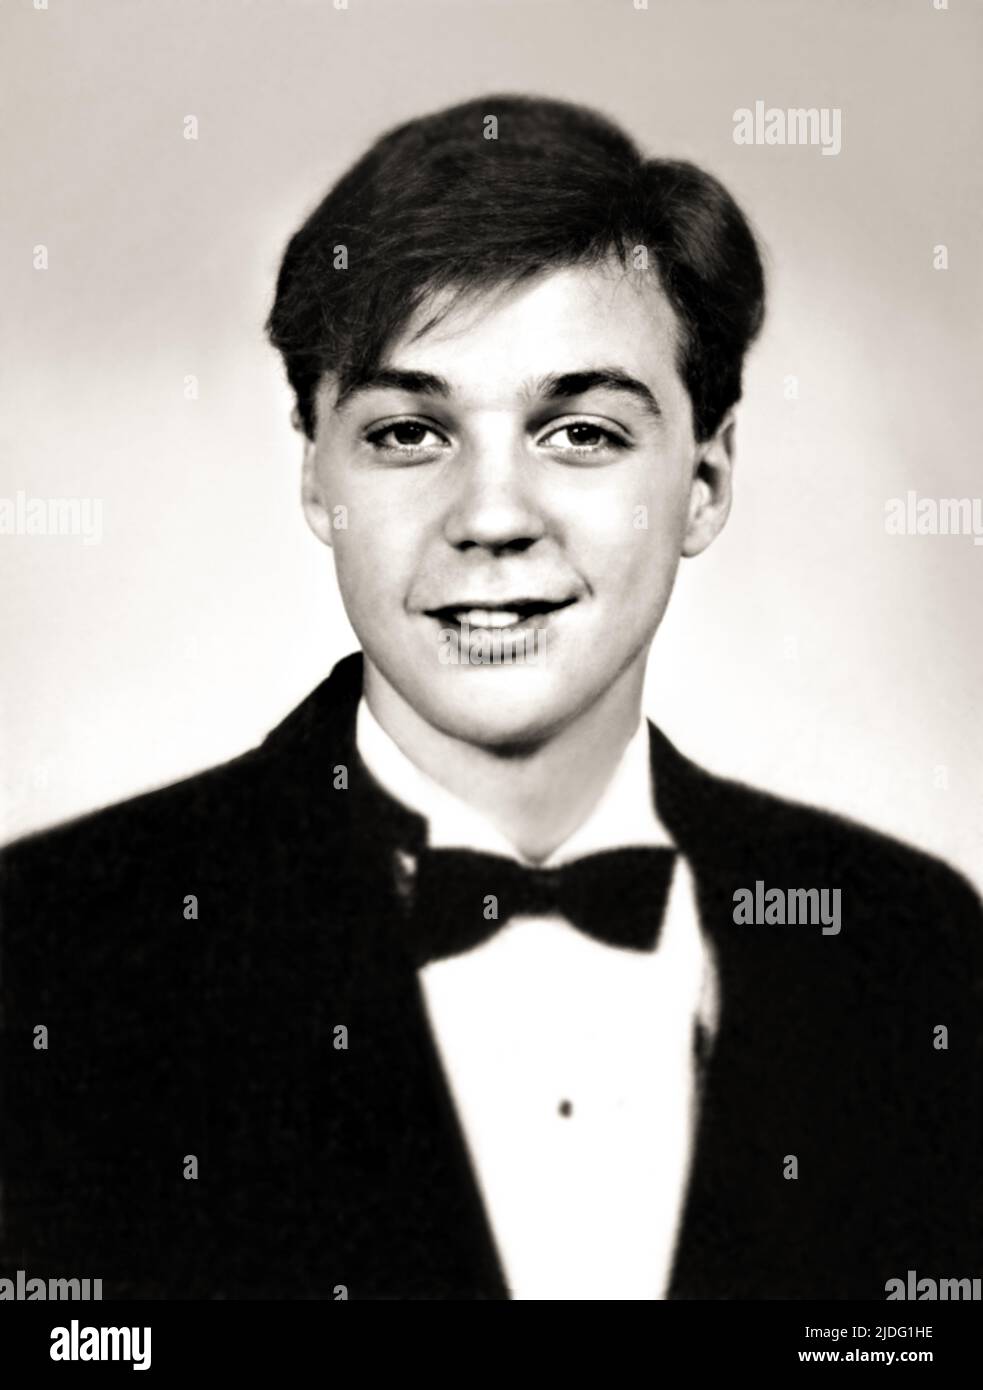 1990 Ca, LOS ANGELES , USA : El célebre actor de cine y televisión JIM PARSON ( nacido en Houston , 24 de marzo de 1973 ), famoso por su papel de Sheldon Cooper en la teoría del BIG BANG en serie de televisión ( 2007 - 2019 ) cuando era un niño de 17 años . Foto del ANUARIO DE LA ESCUELA SECUNDARIA , fotógrafo desconocido .- HISTORIA - FOTO STORICHE - ATTORE - CINE - TELEVISIONE - personalità da giovane - Personalidades de la personalidad Cuando era joven - ADOLESCENTE - sonrisa - sorriso - LGBTQ - GAY - TRANSMISIÓN - ADOLSCENZA - ADOLESCENTE -- - ARCHIVIO GBB Foto de stock